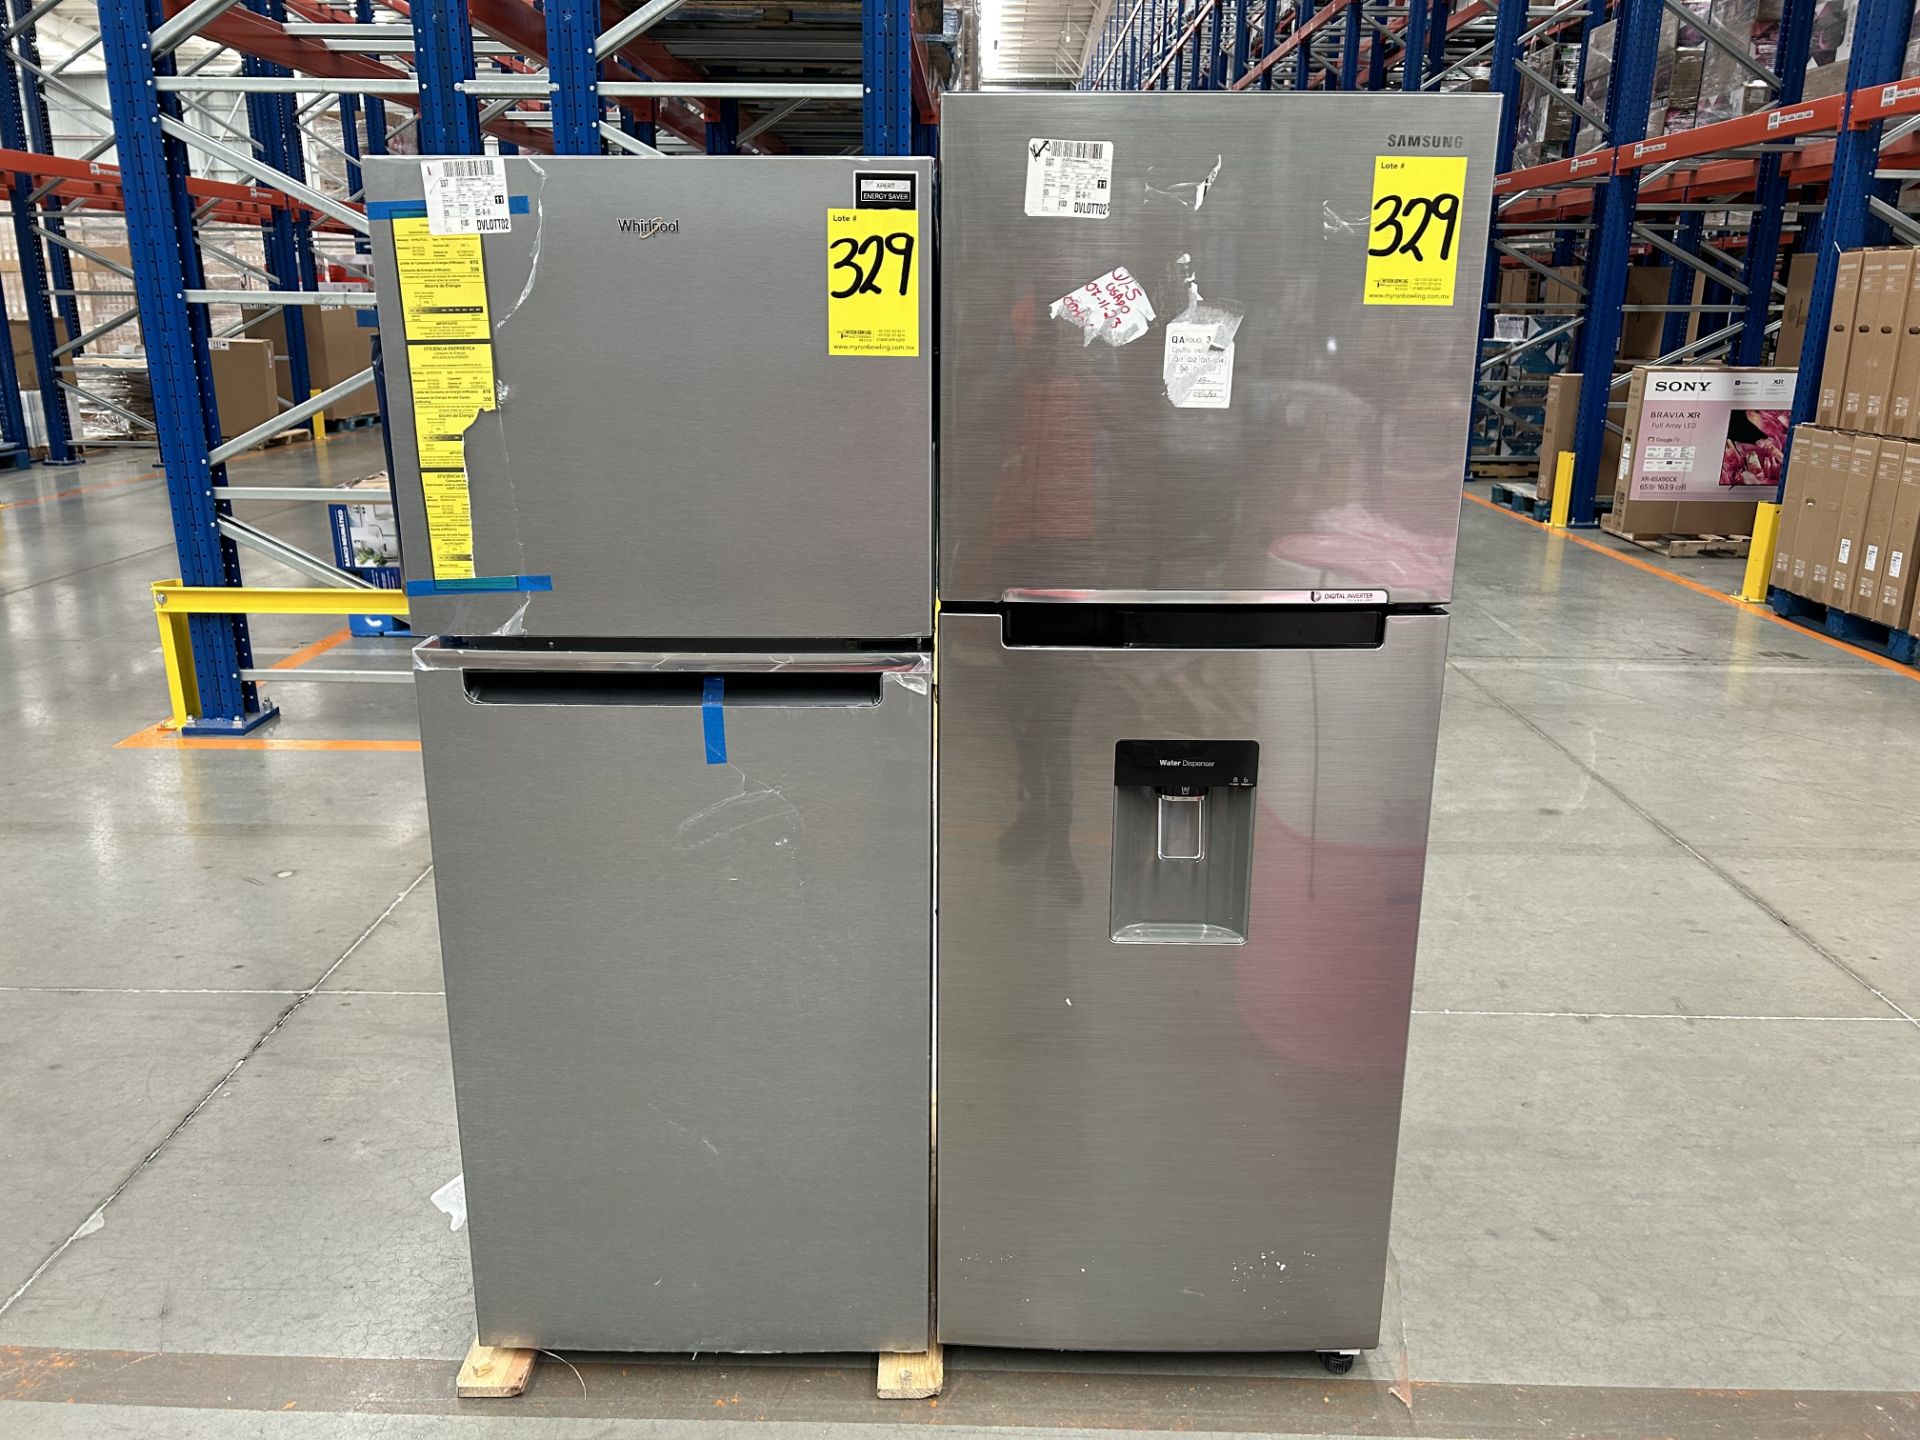 Lote de 2 refrigeradores contiene: 1 Refrigerador con dispensador de agua Marca SAMSUNG, Modelo RT2